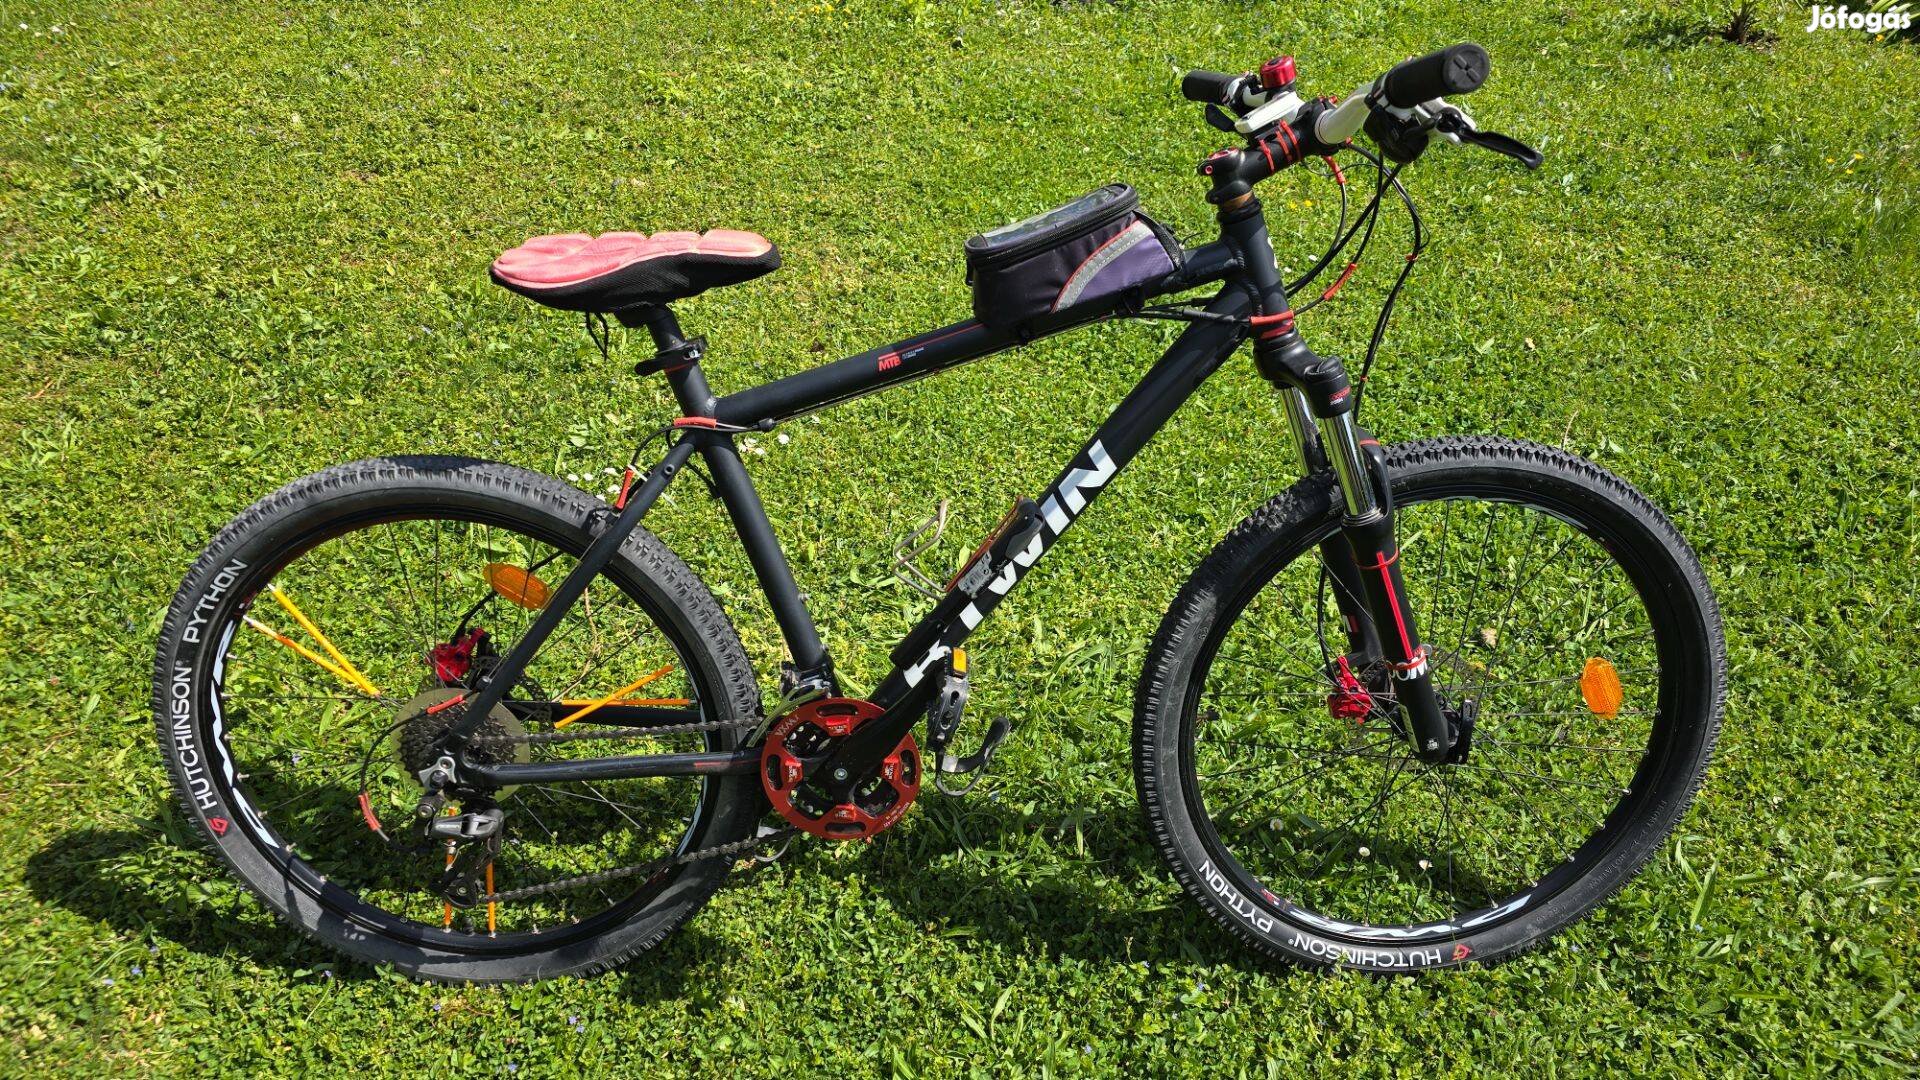 Rockrider 520 MTB kerékpár. Sok kiegészitő